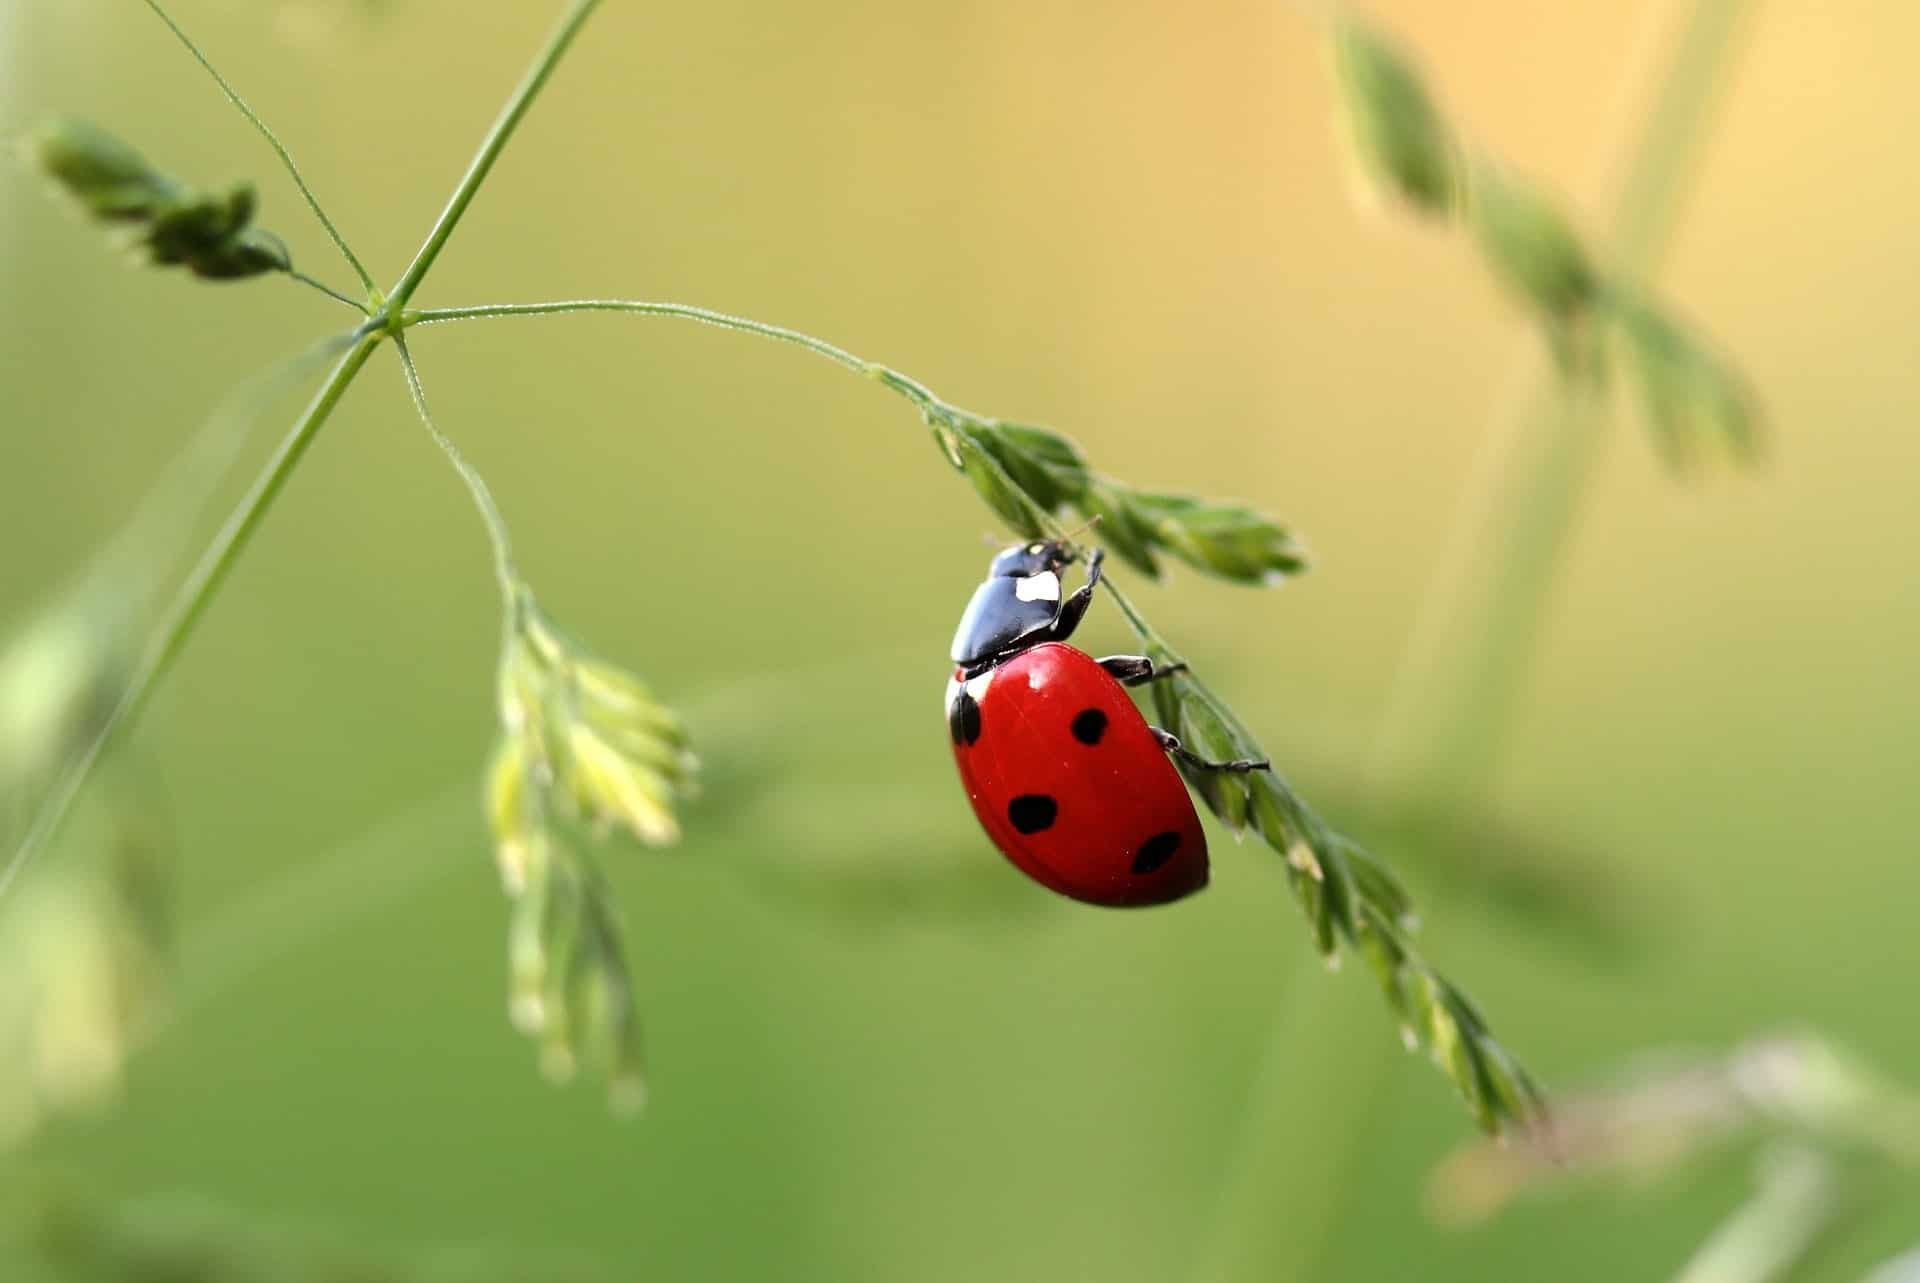 photo-of-ladybug-on-leaf-during-daytime